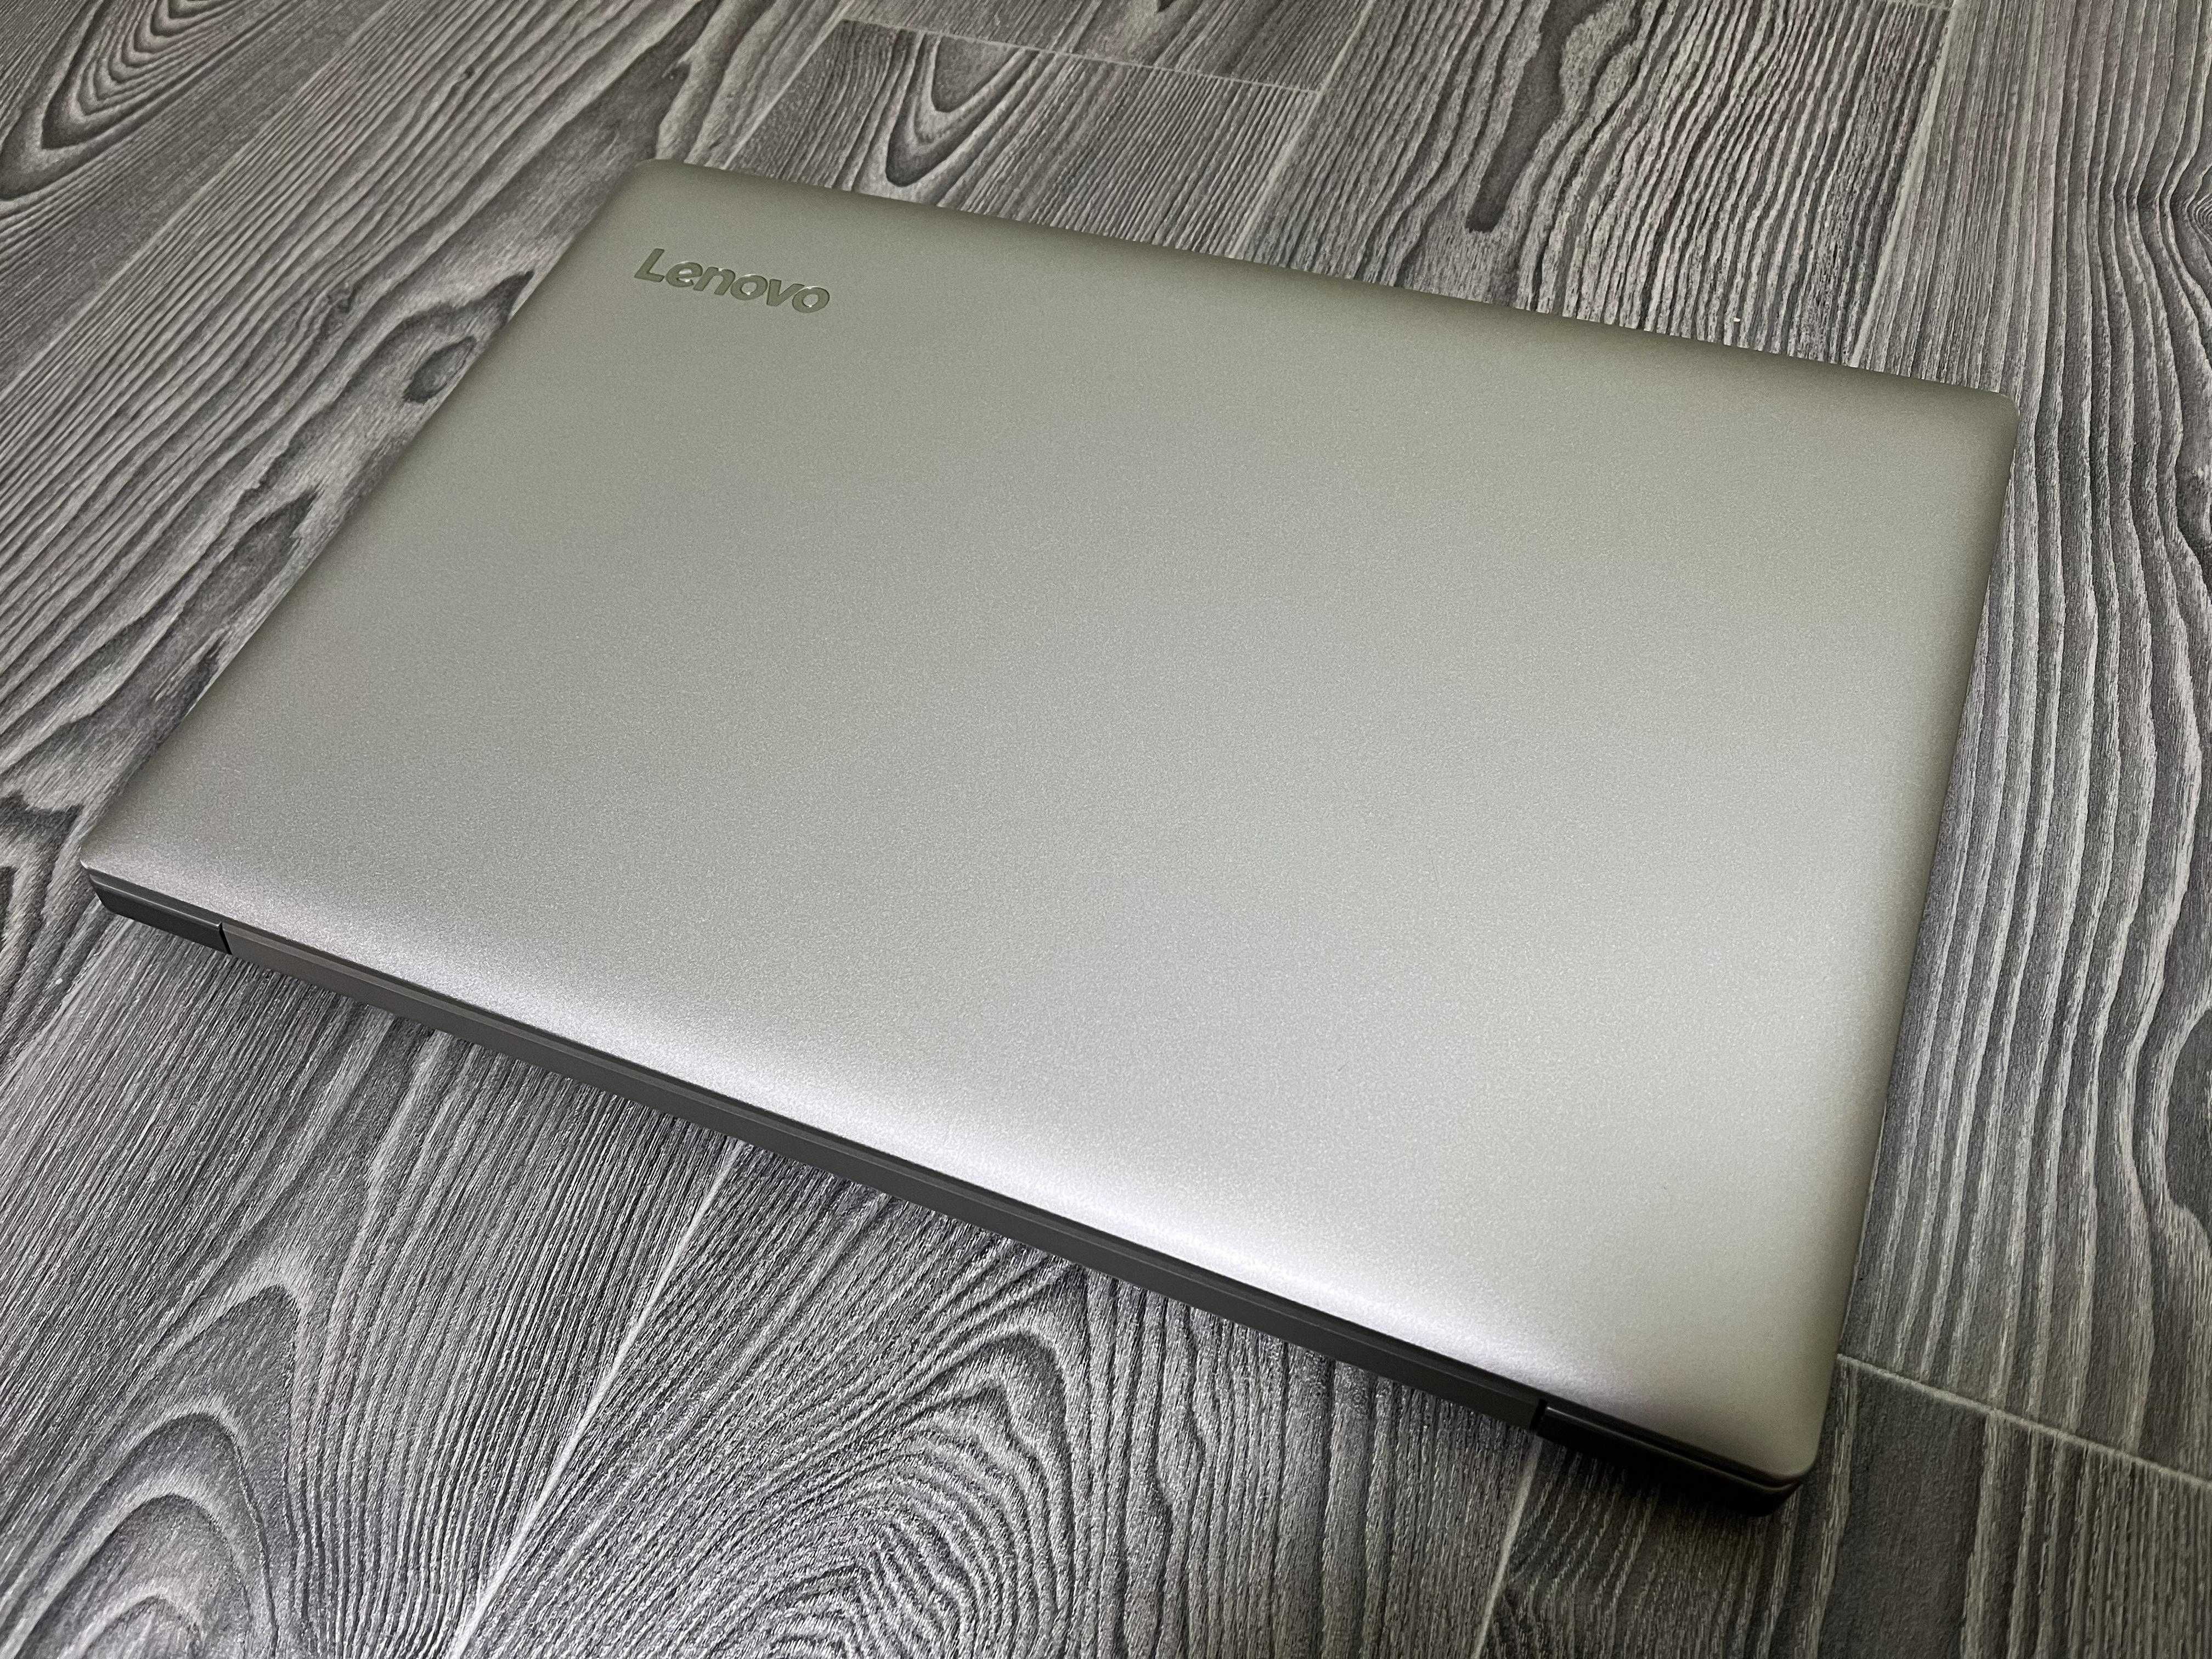 Ноутбук Lenovo Ideapad 80XL 15.6" FullHD i5-7200U 12GB DDR4/256GB SSD